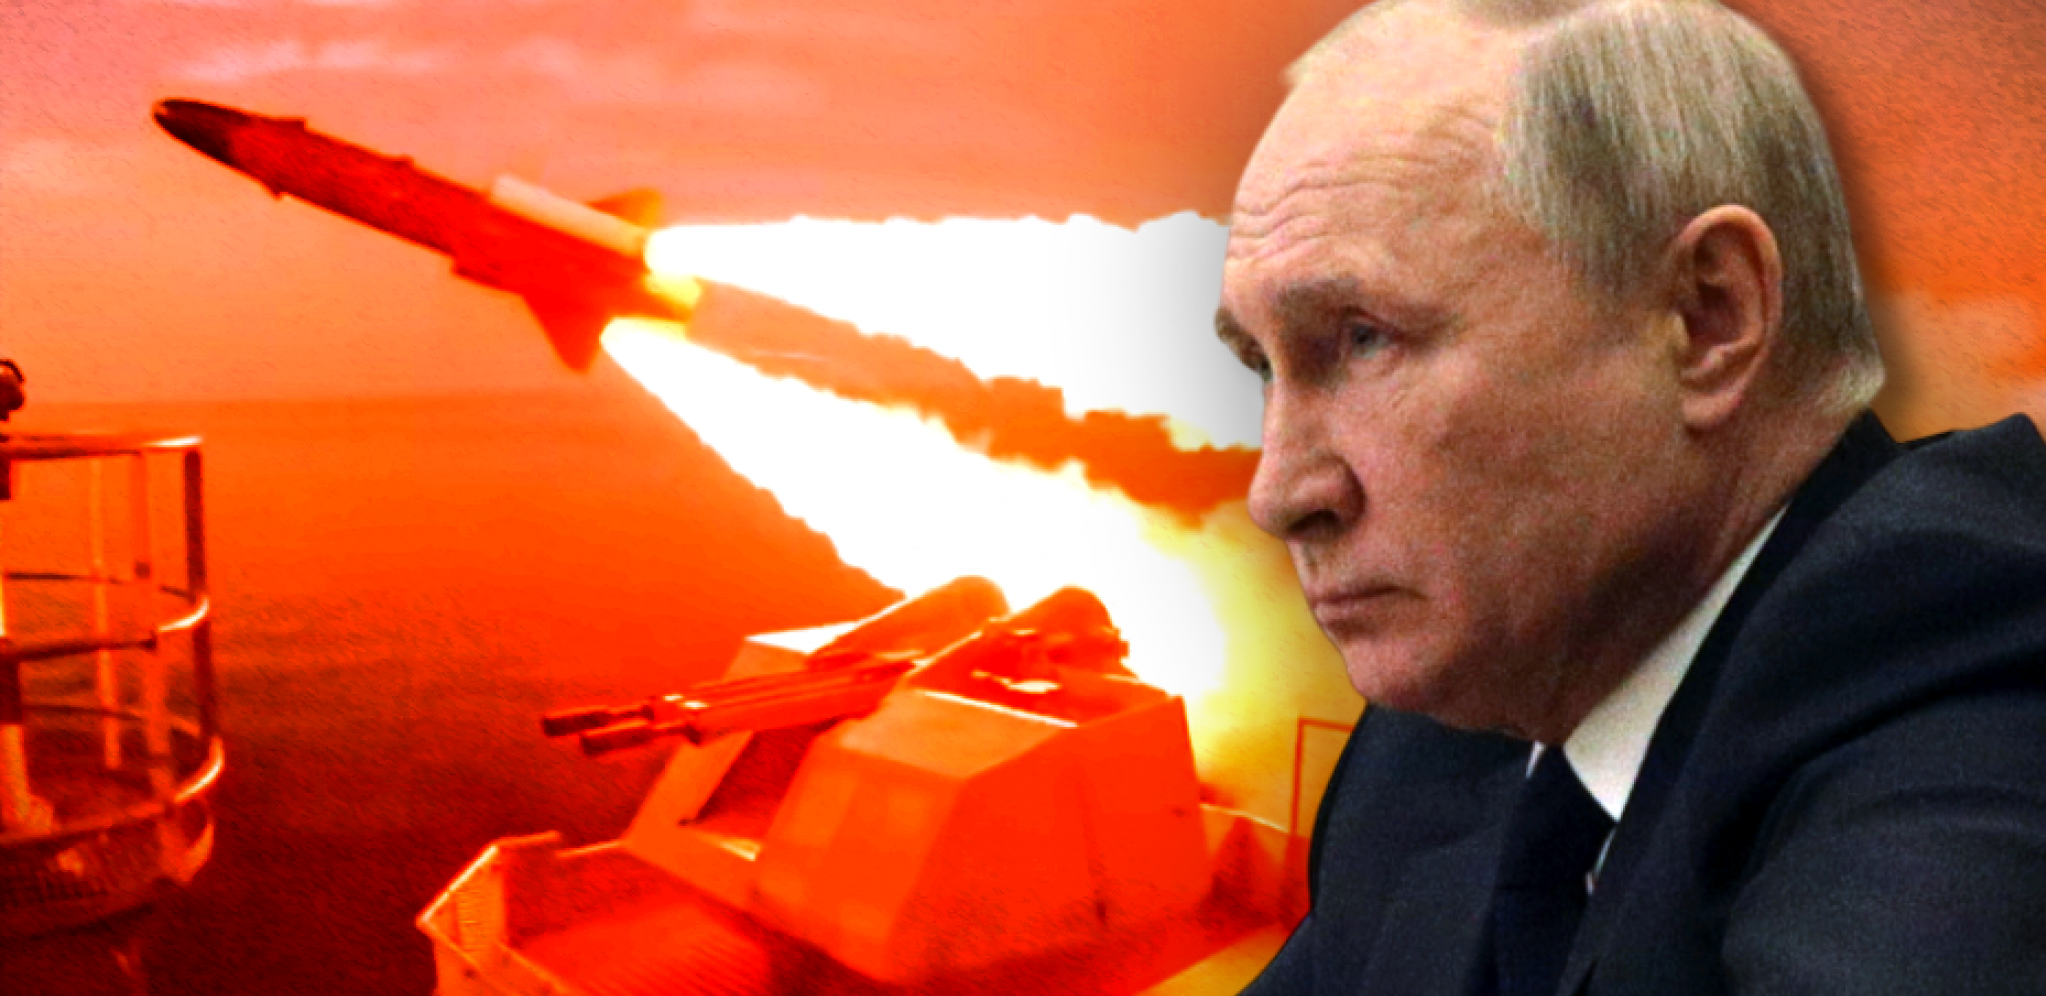 DVA PRECIZNA UDARA I GOTOVO Američki general predviđa kraj za Putina